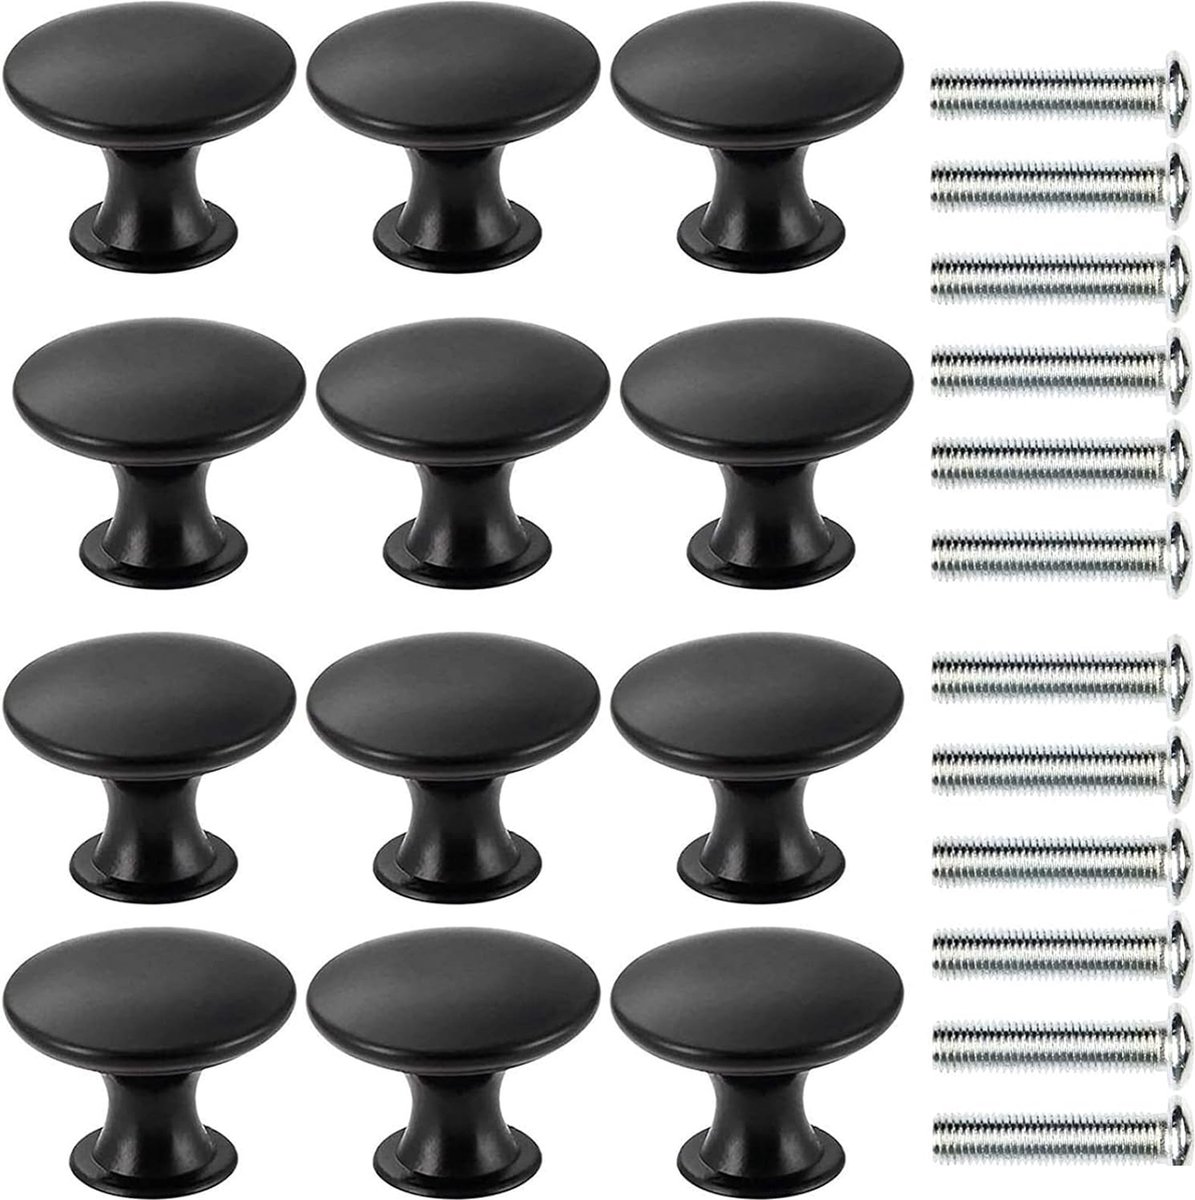 Set van 12 mat zwarte ladeknoppen, meubelknoppen, ladegrepen, ladekastknoppen set met 12 stuks schroeven, 30 mm moderne kasthandgrepen meubelronde meubelknop